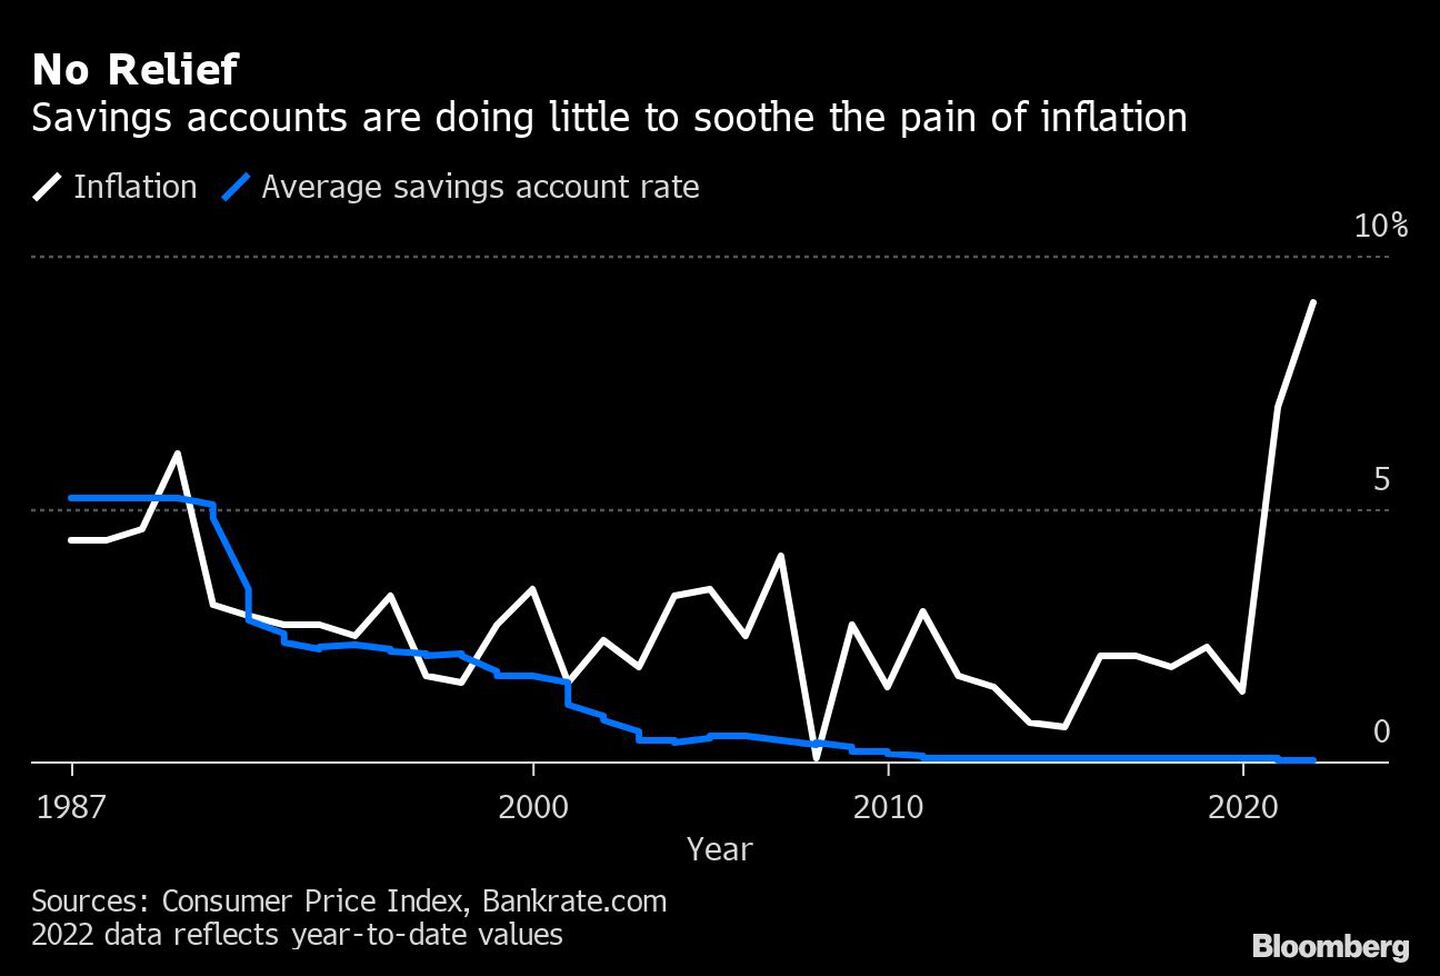 Las cuentas de ahorro están haciendo poco para aliviar el dolor de la inflacióndfd